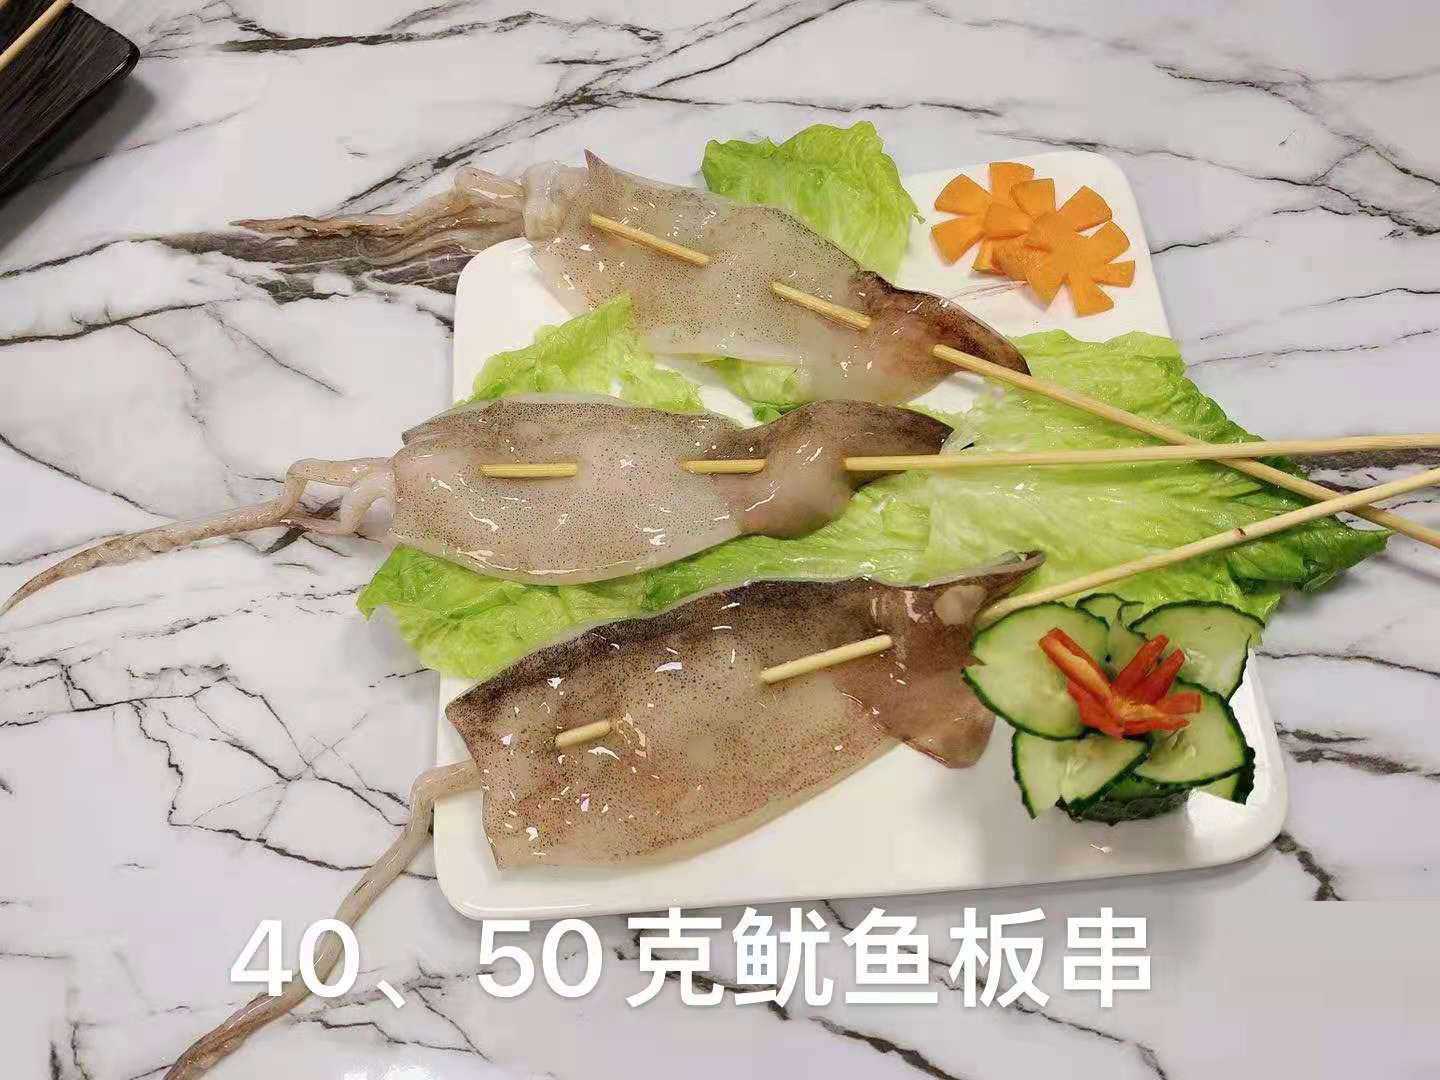  海鮮40、50克魷魚板串